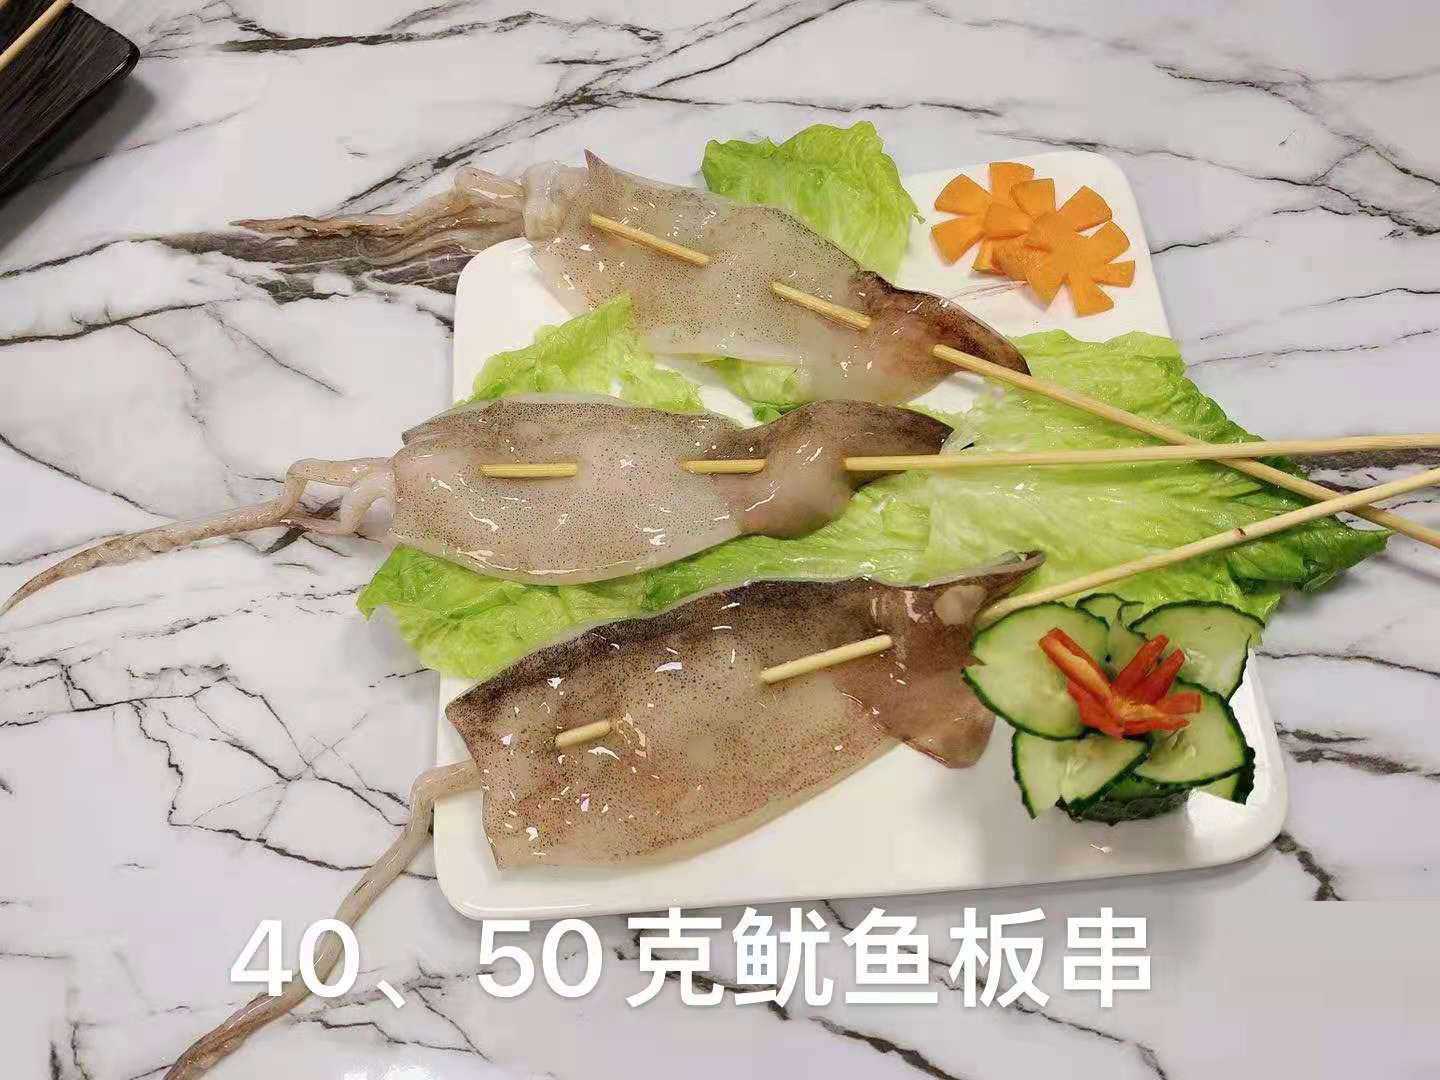  海鮮40、50克魷魚板串